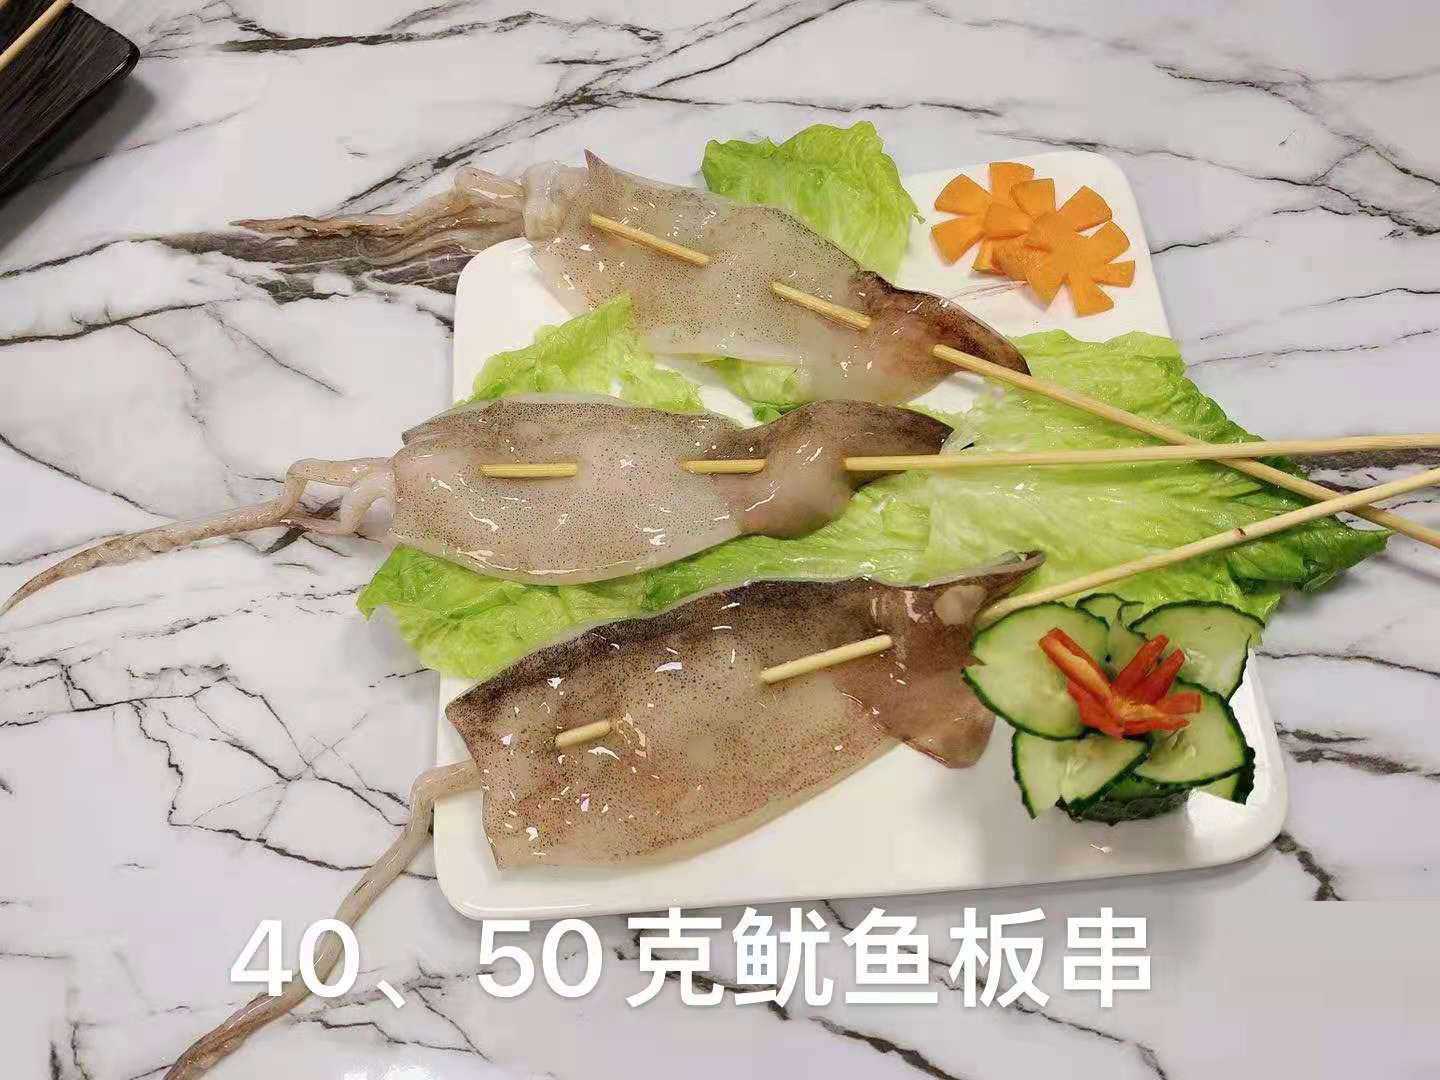  海鮮40、50克魷魚板串